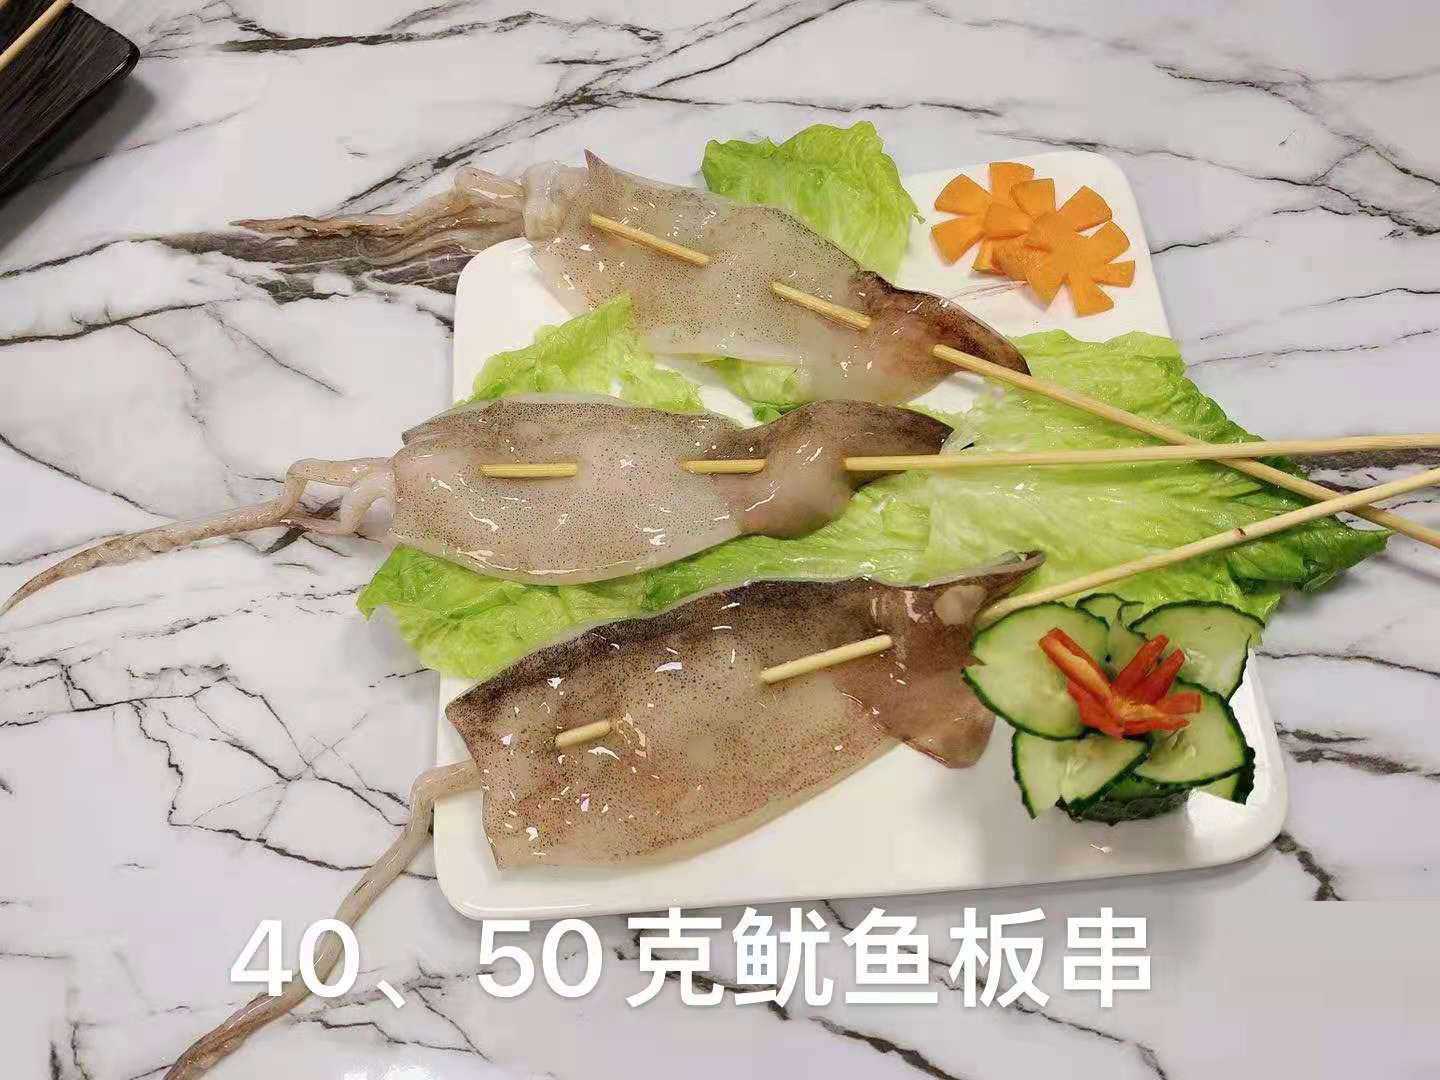  海鮮40、50克魷魚板串